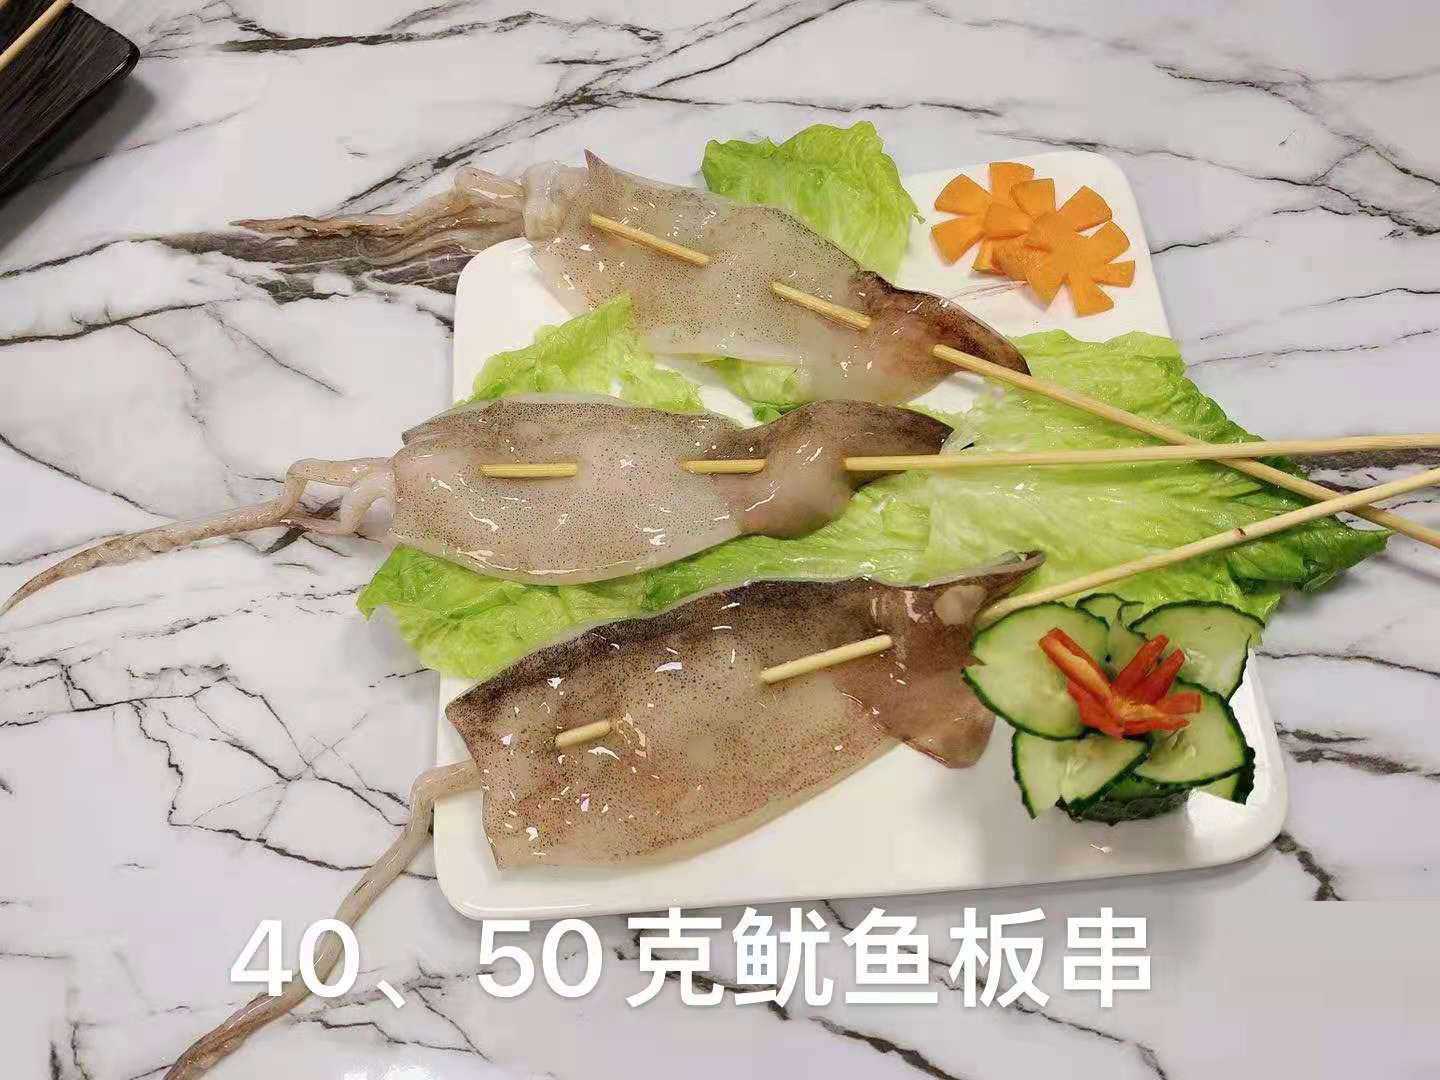  海鮮40、50克魷魚板串